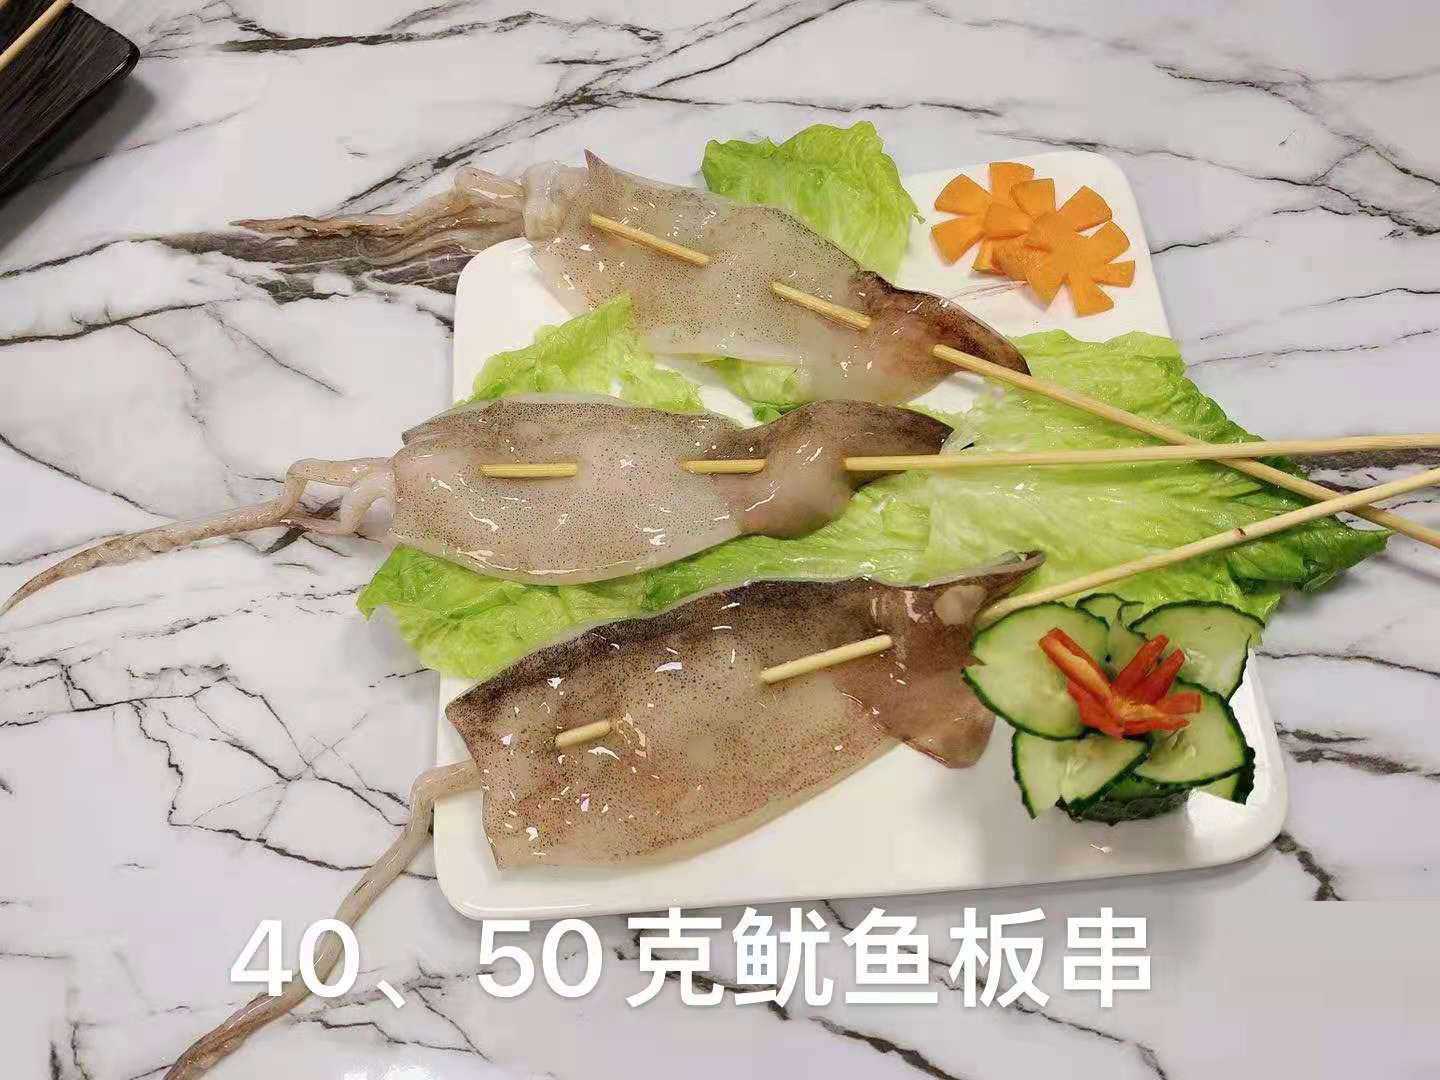  海鮮40、50克魷魚板串